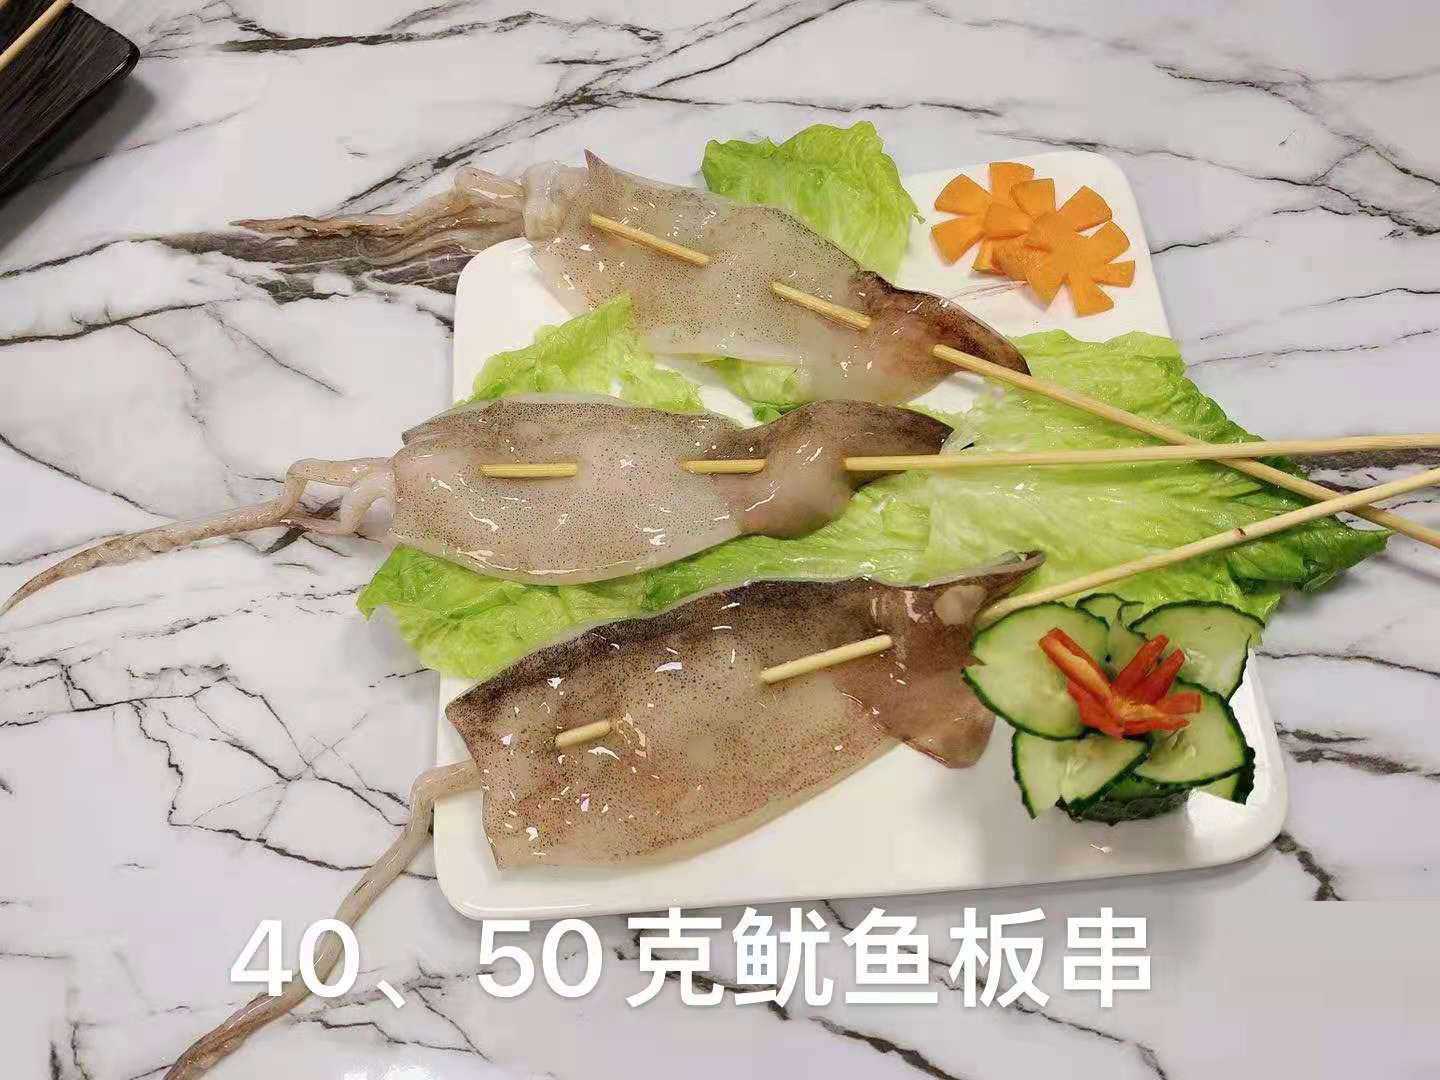  海鮮40、50克魷魚板串